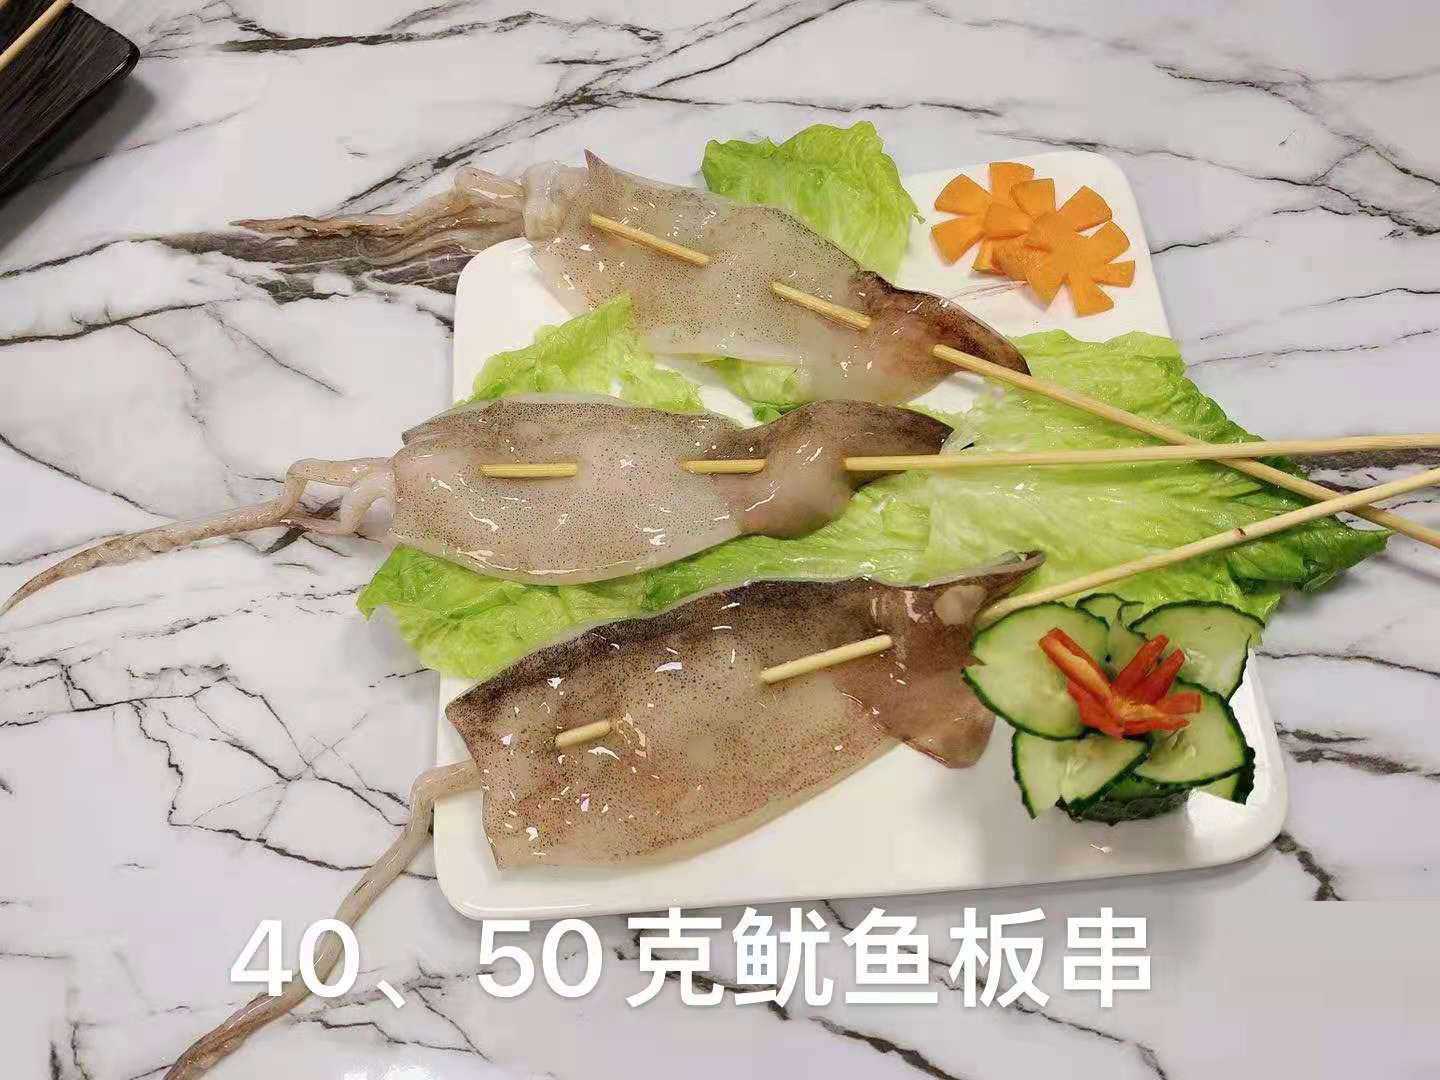  海鮮40、50克魷魚板串